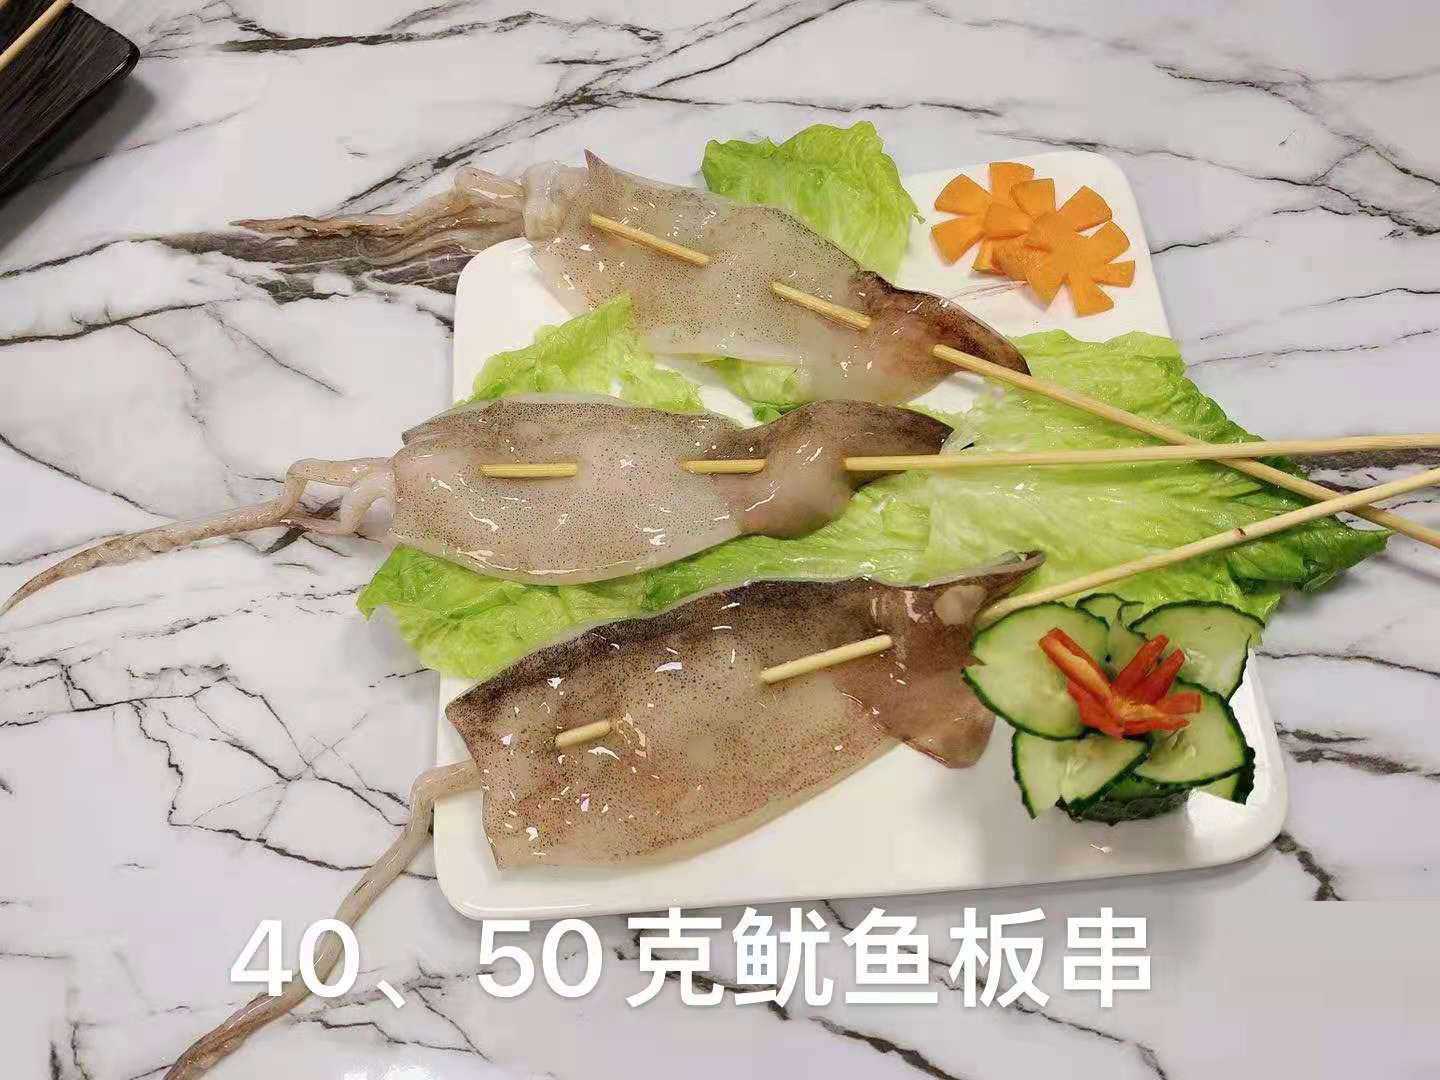  海鮮40、50克魷魚板串